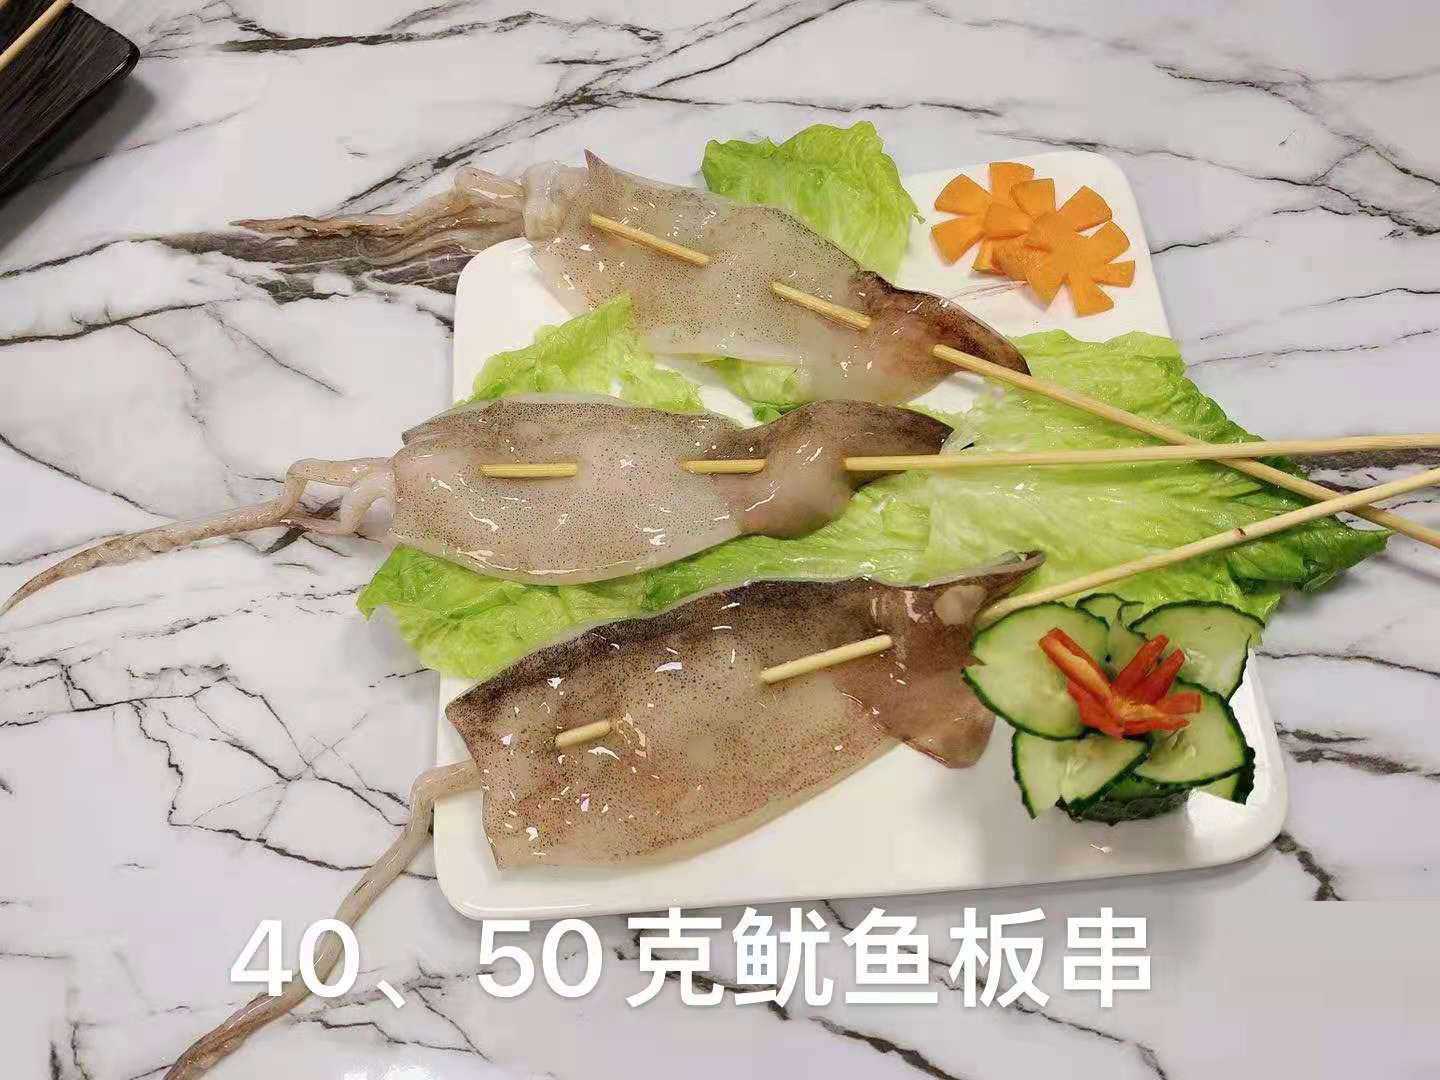  海鮮40、50克魷魚板串